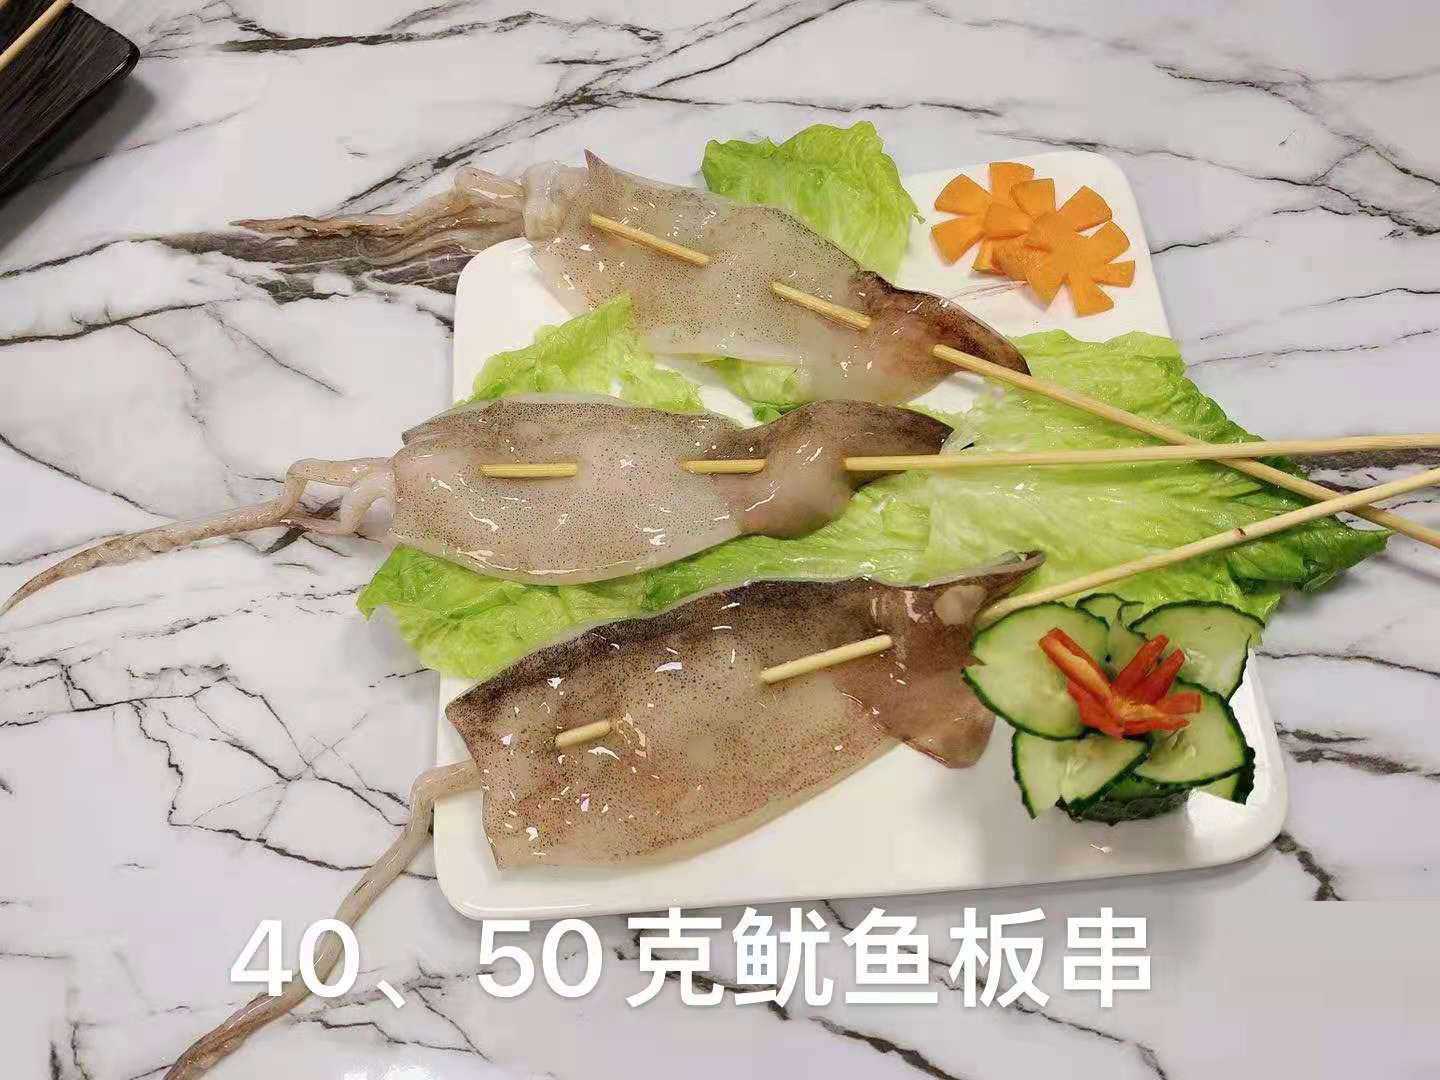  海鮮40、50克魷魚板串